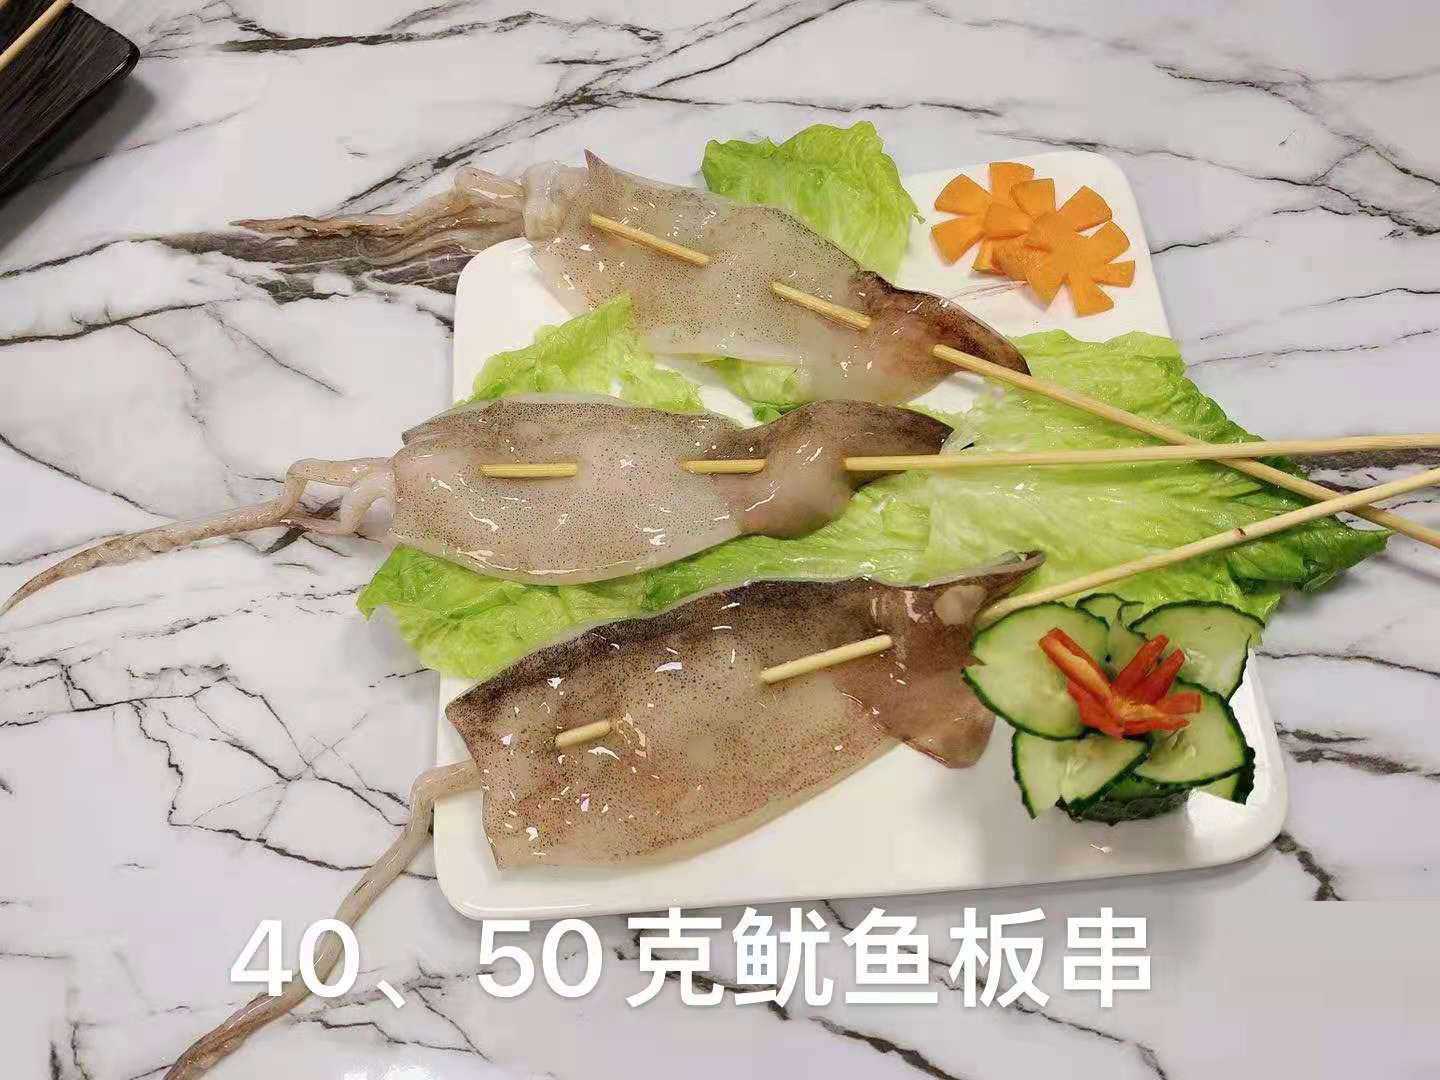  海鮮40、50克魷魚板串